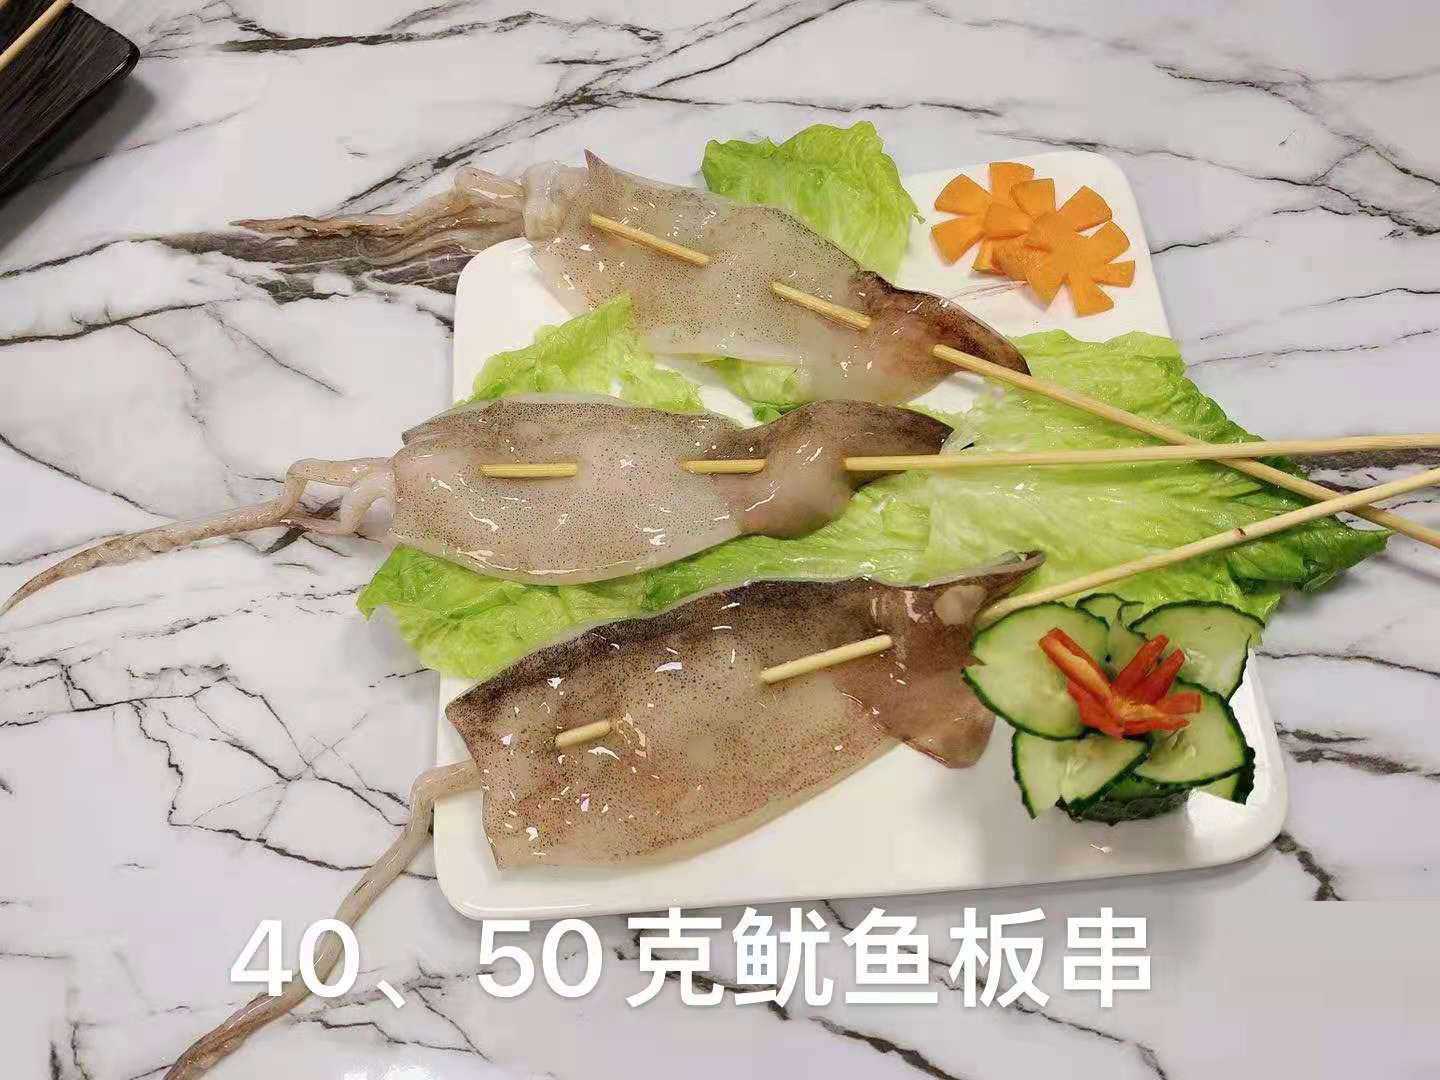  海鮮40、50克魷魚板串